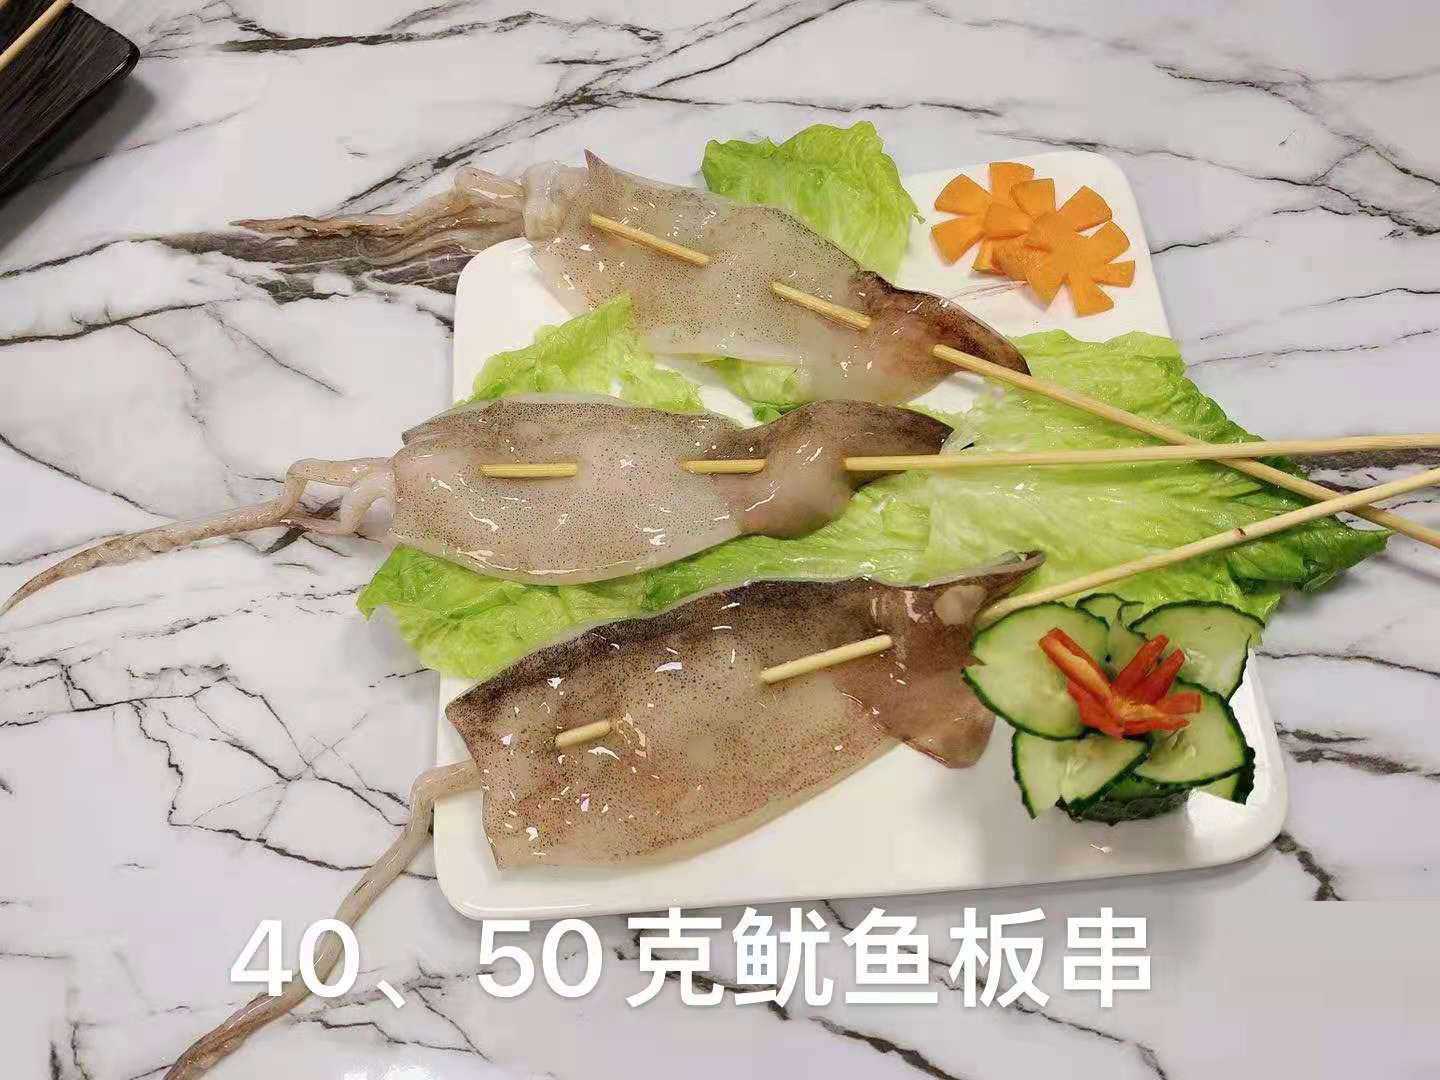  海鮮40、50克魷魚板串